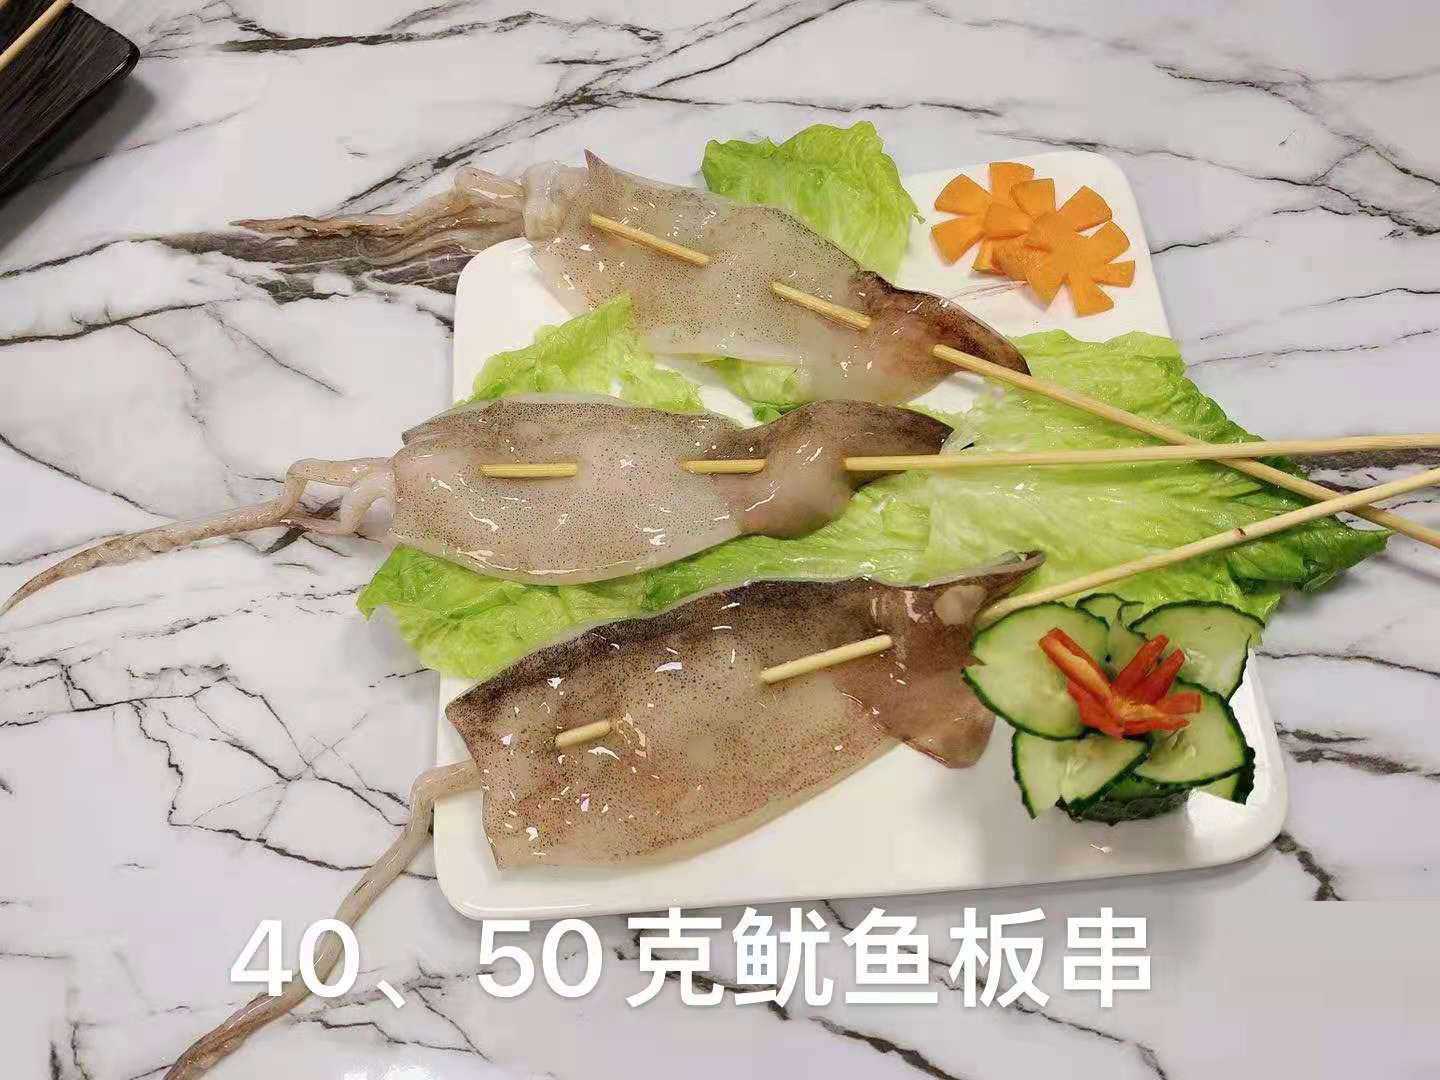  海鮮40、50克魷魚板串